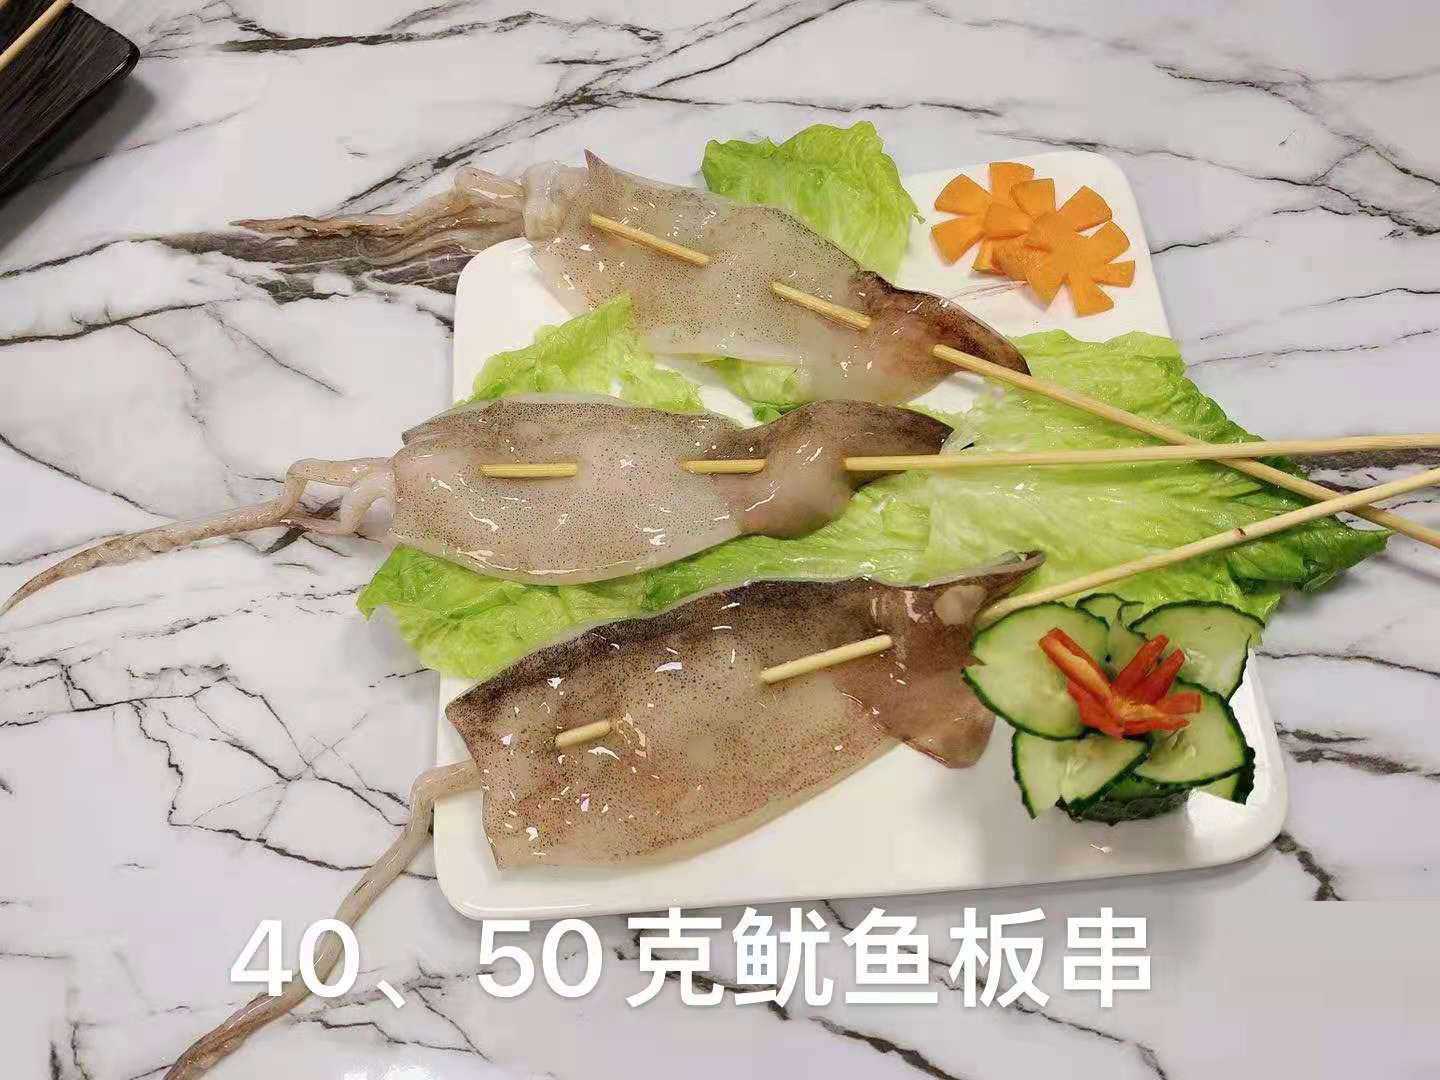  海鮮40、50克魷魚板串